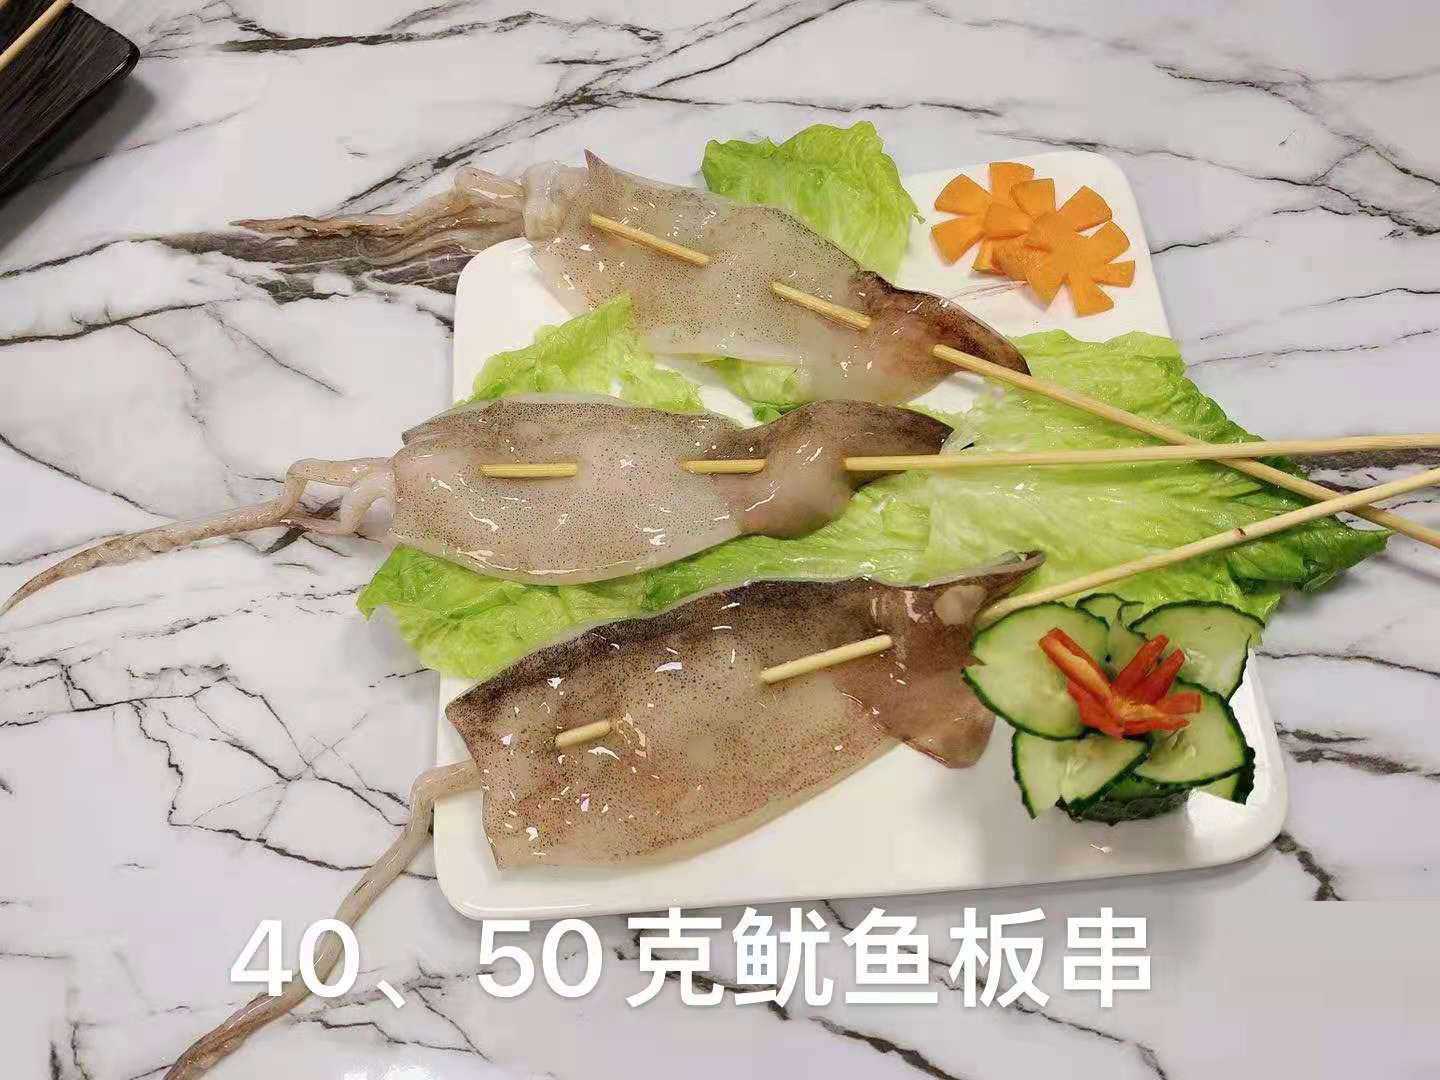  海鮮40、50克魷魚板串